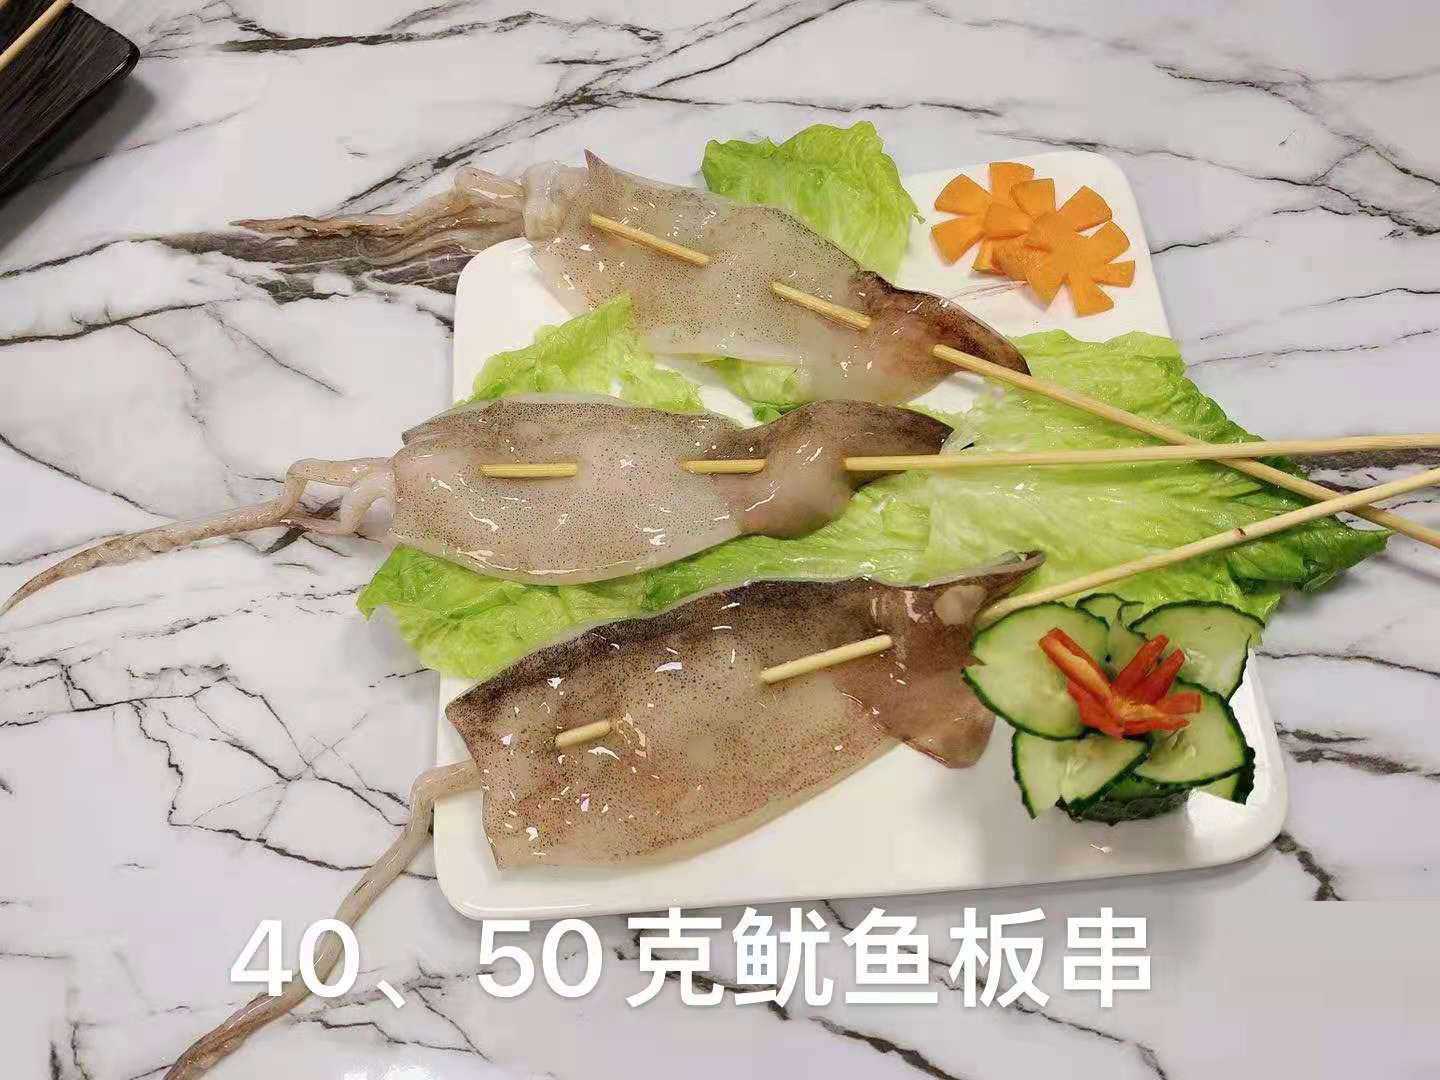  海鮮40、50克魷魚板串